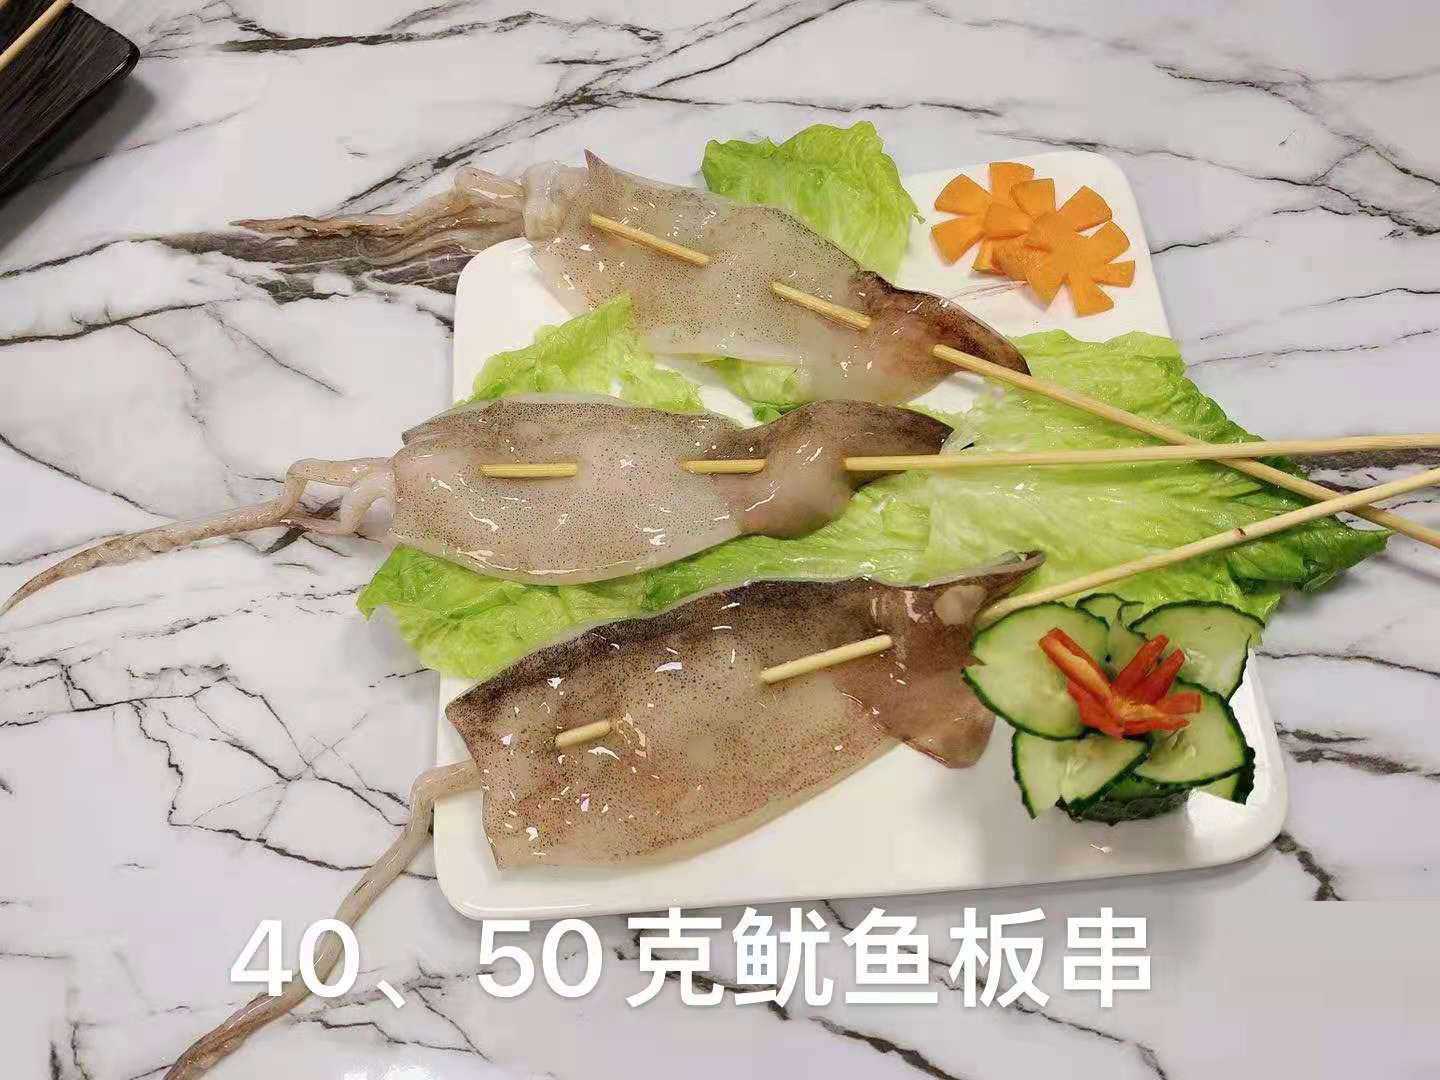  海鮮40、50克魷魚板串